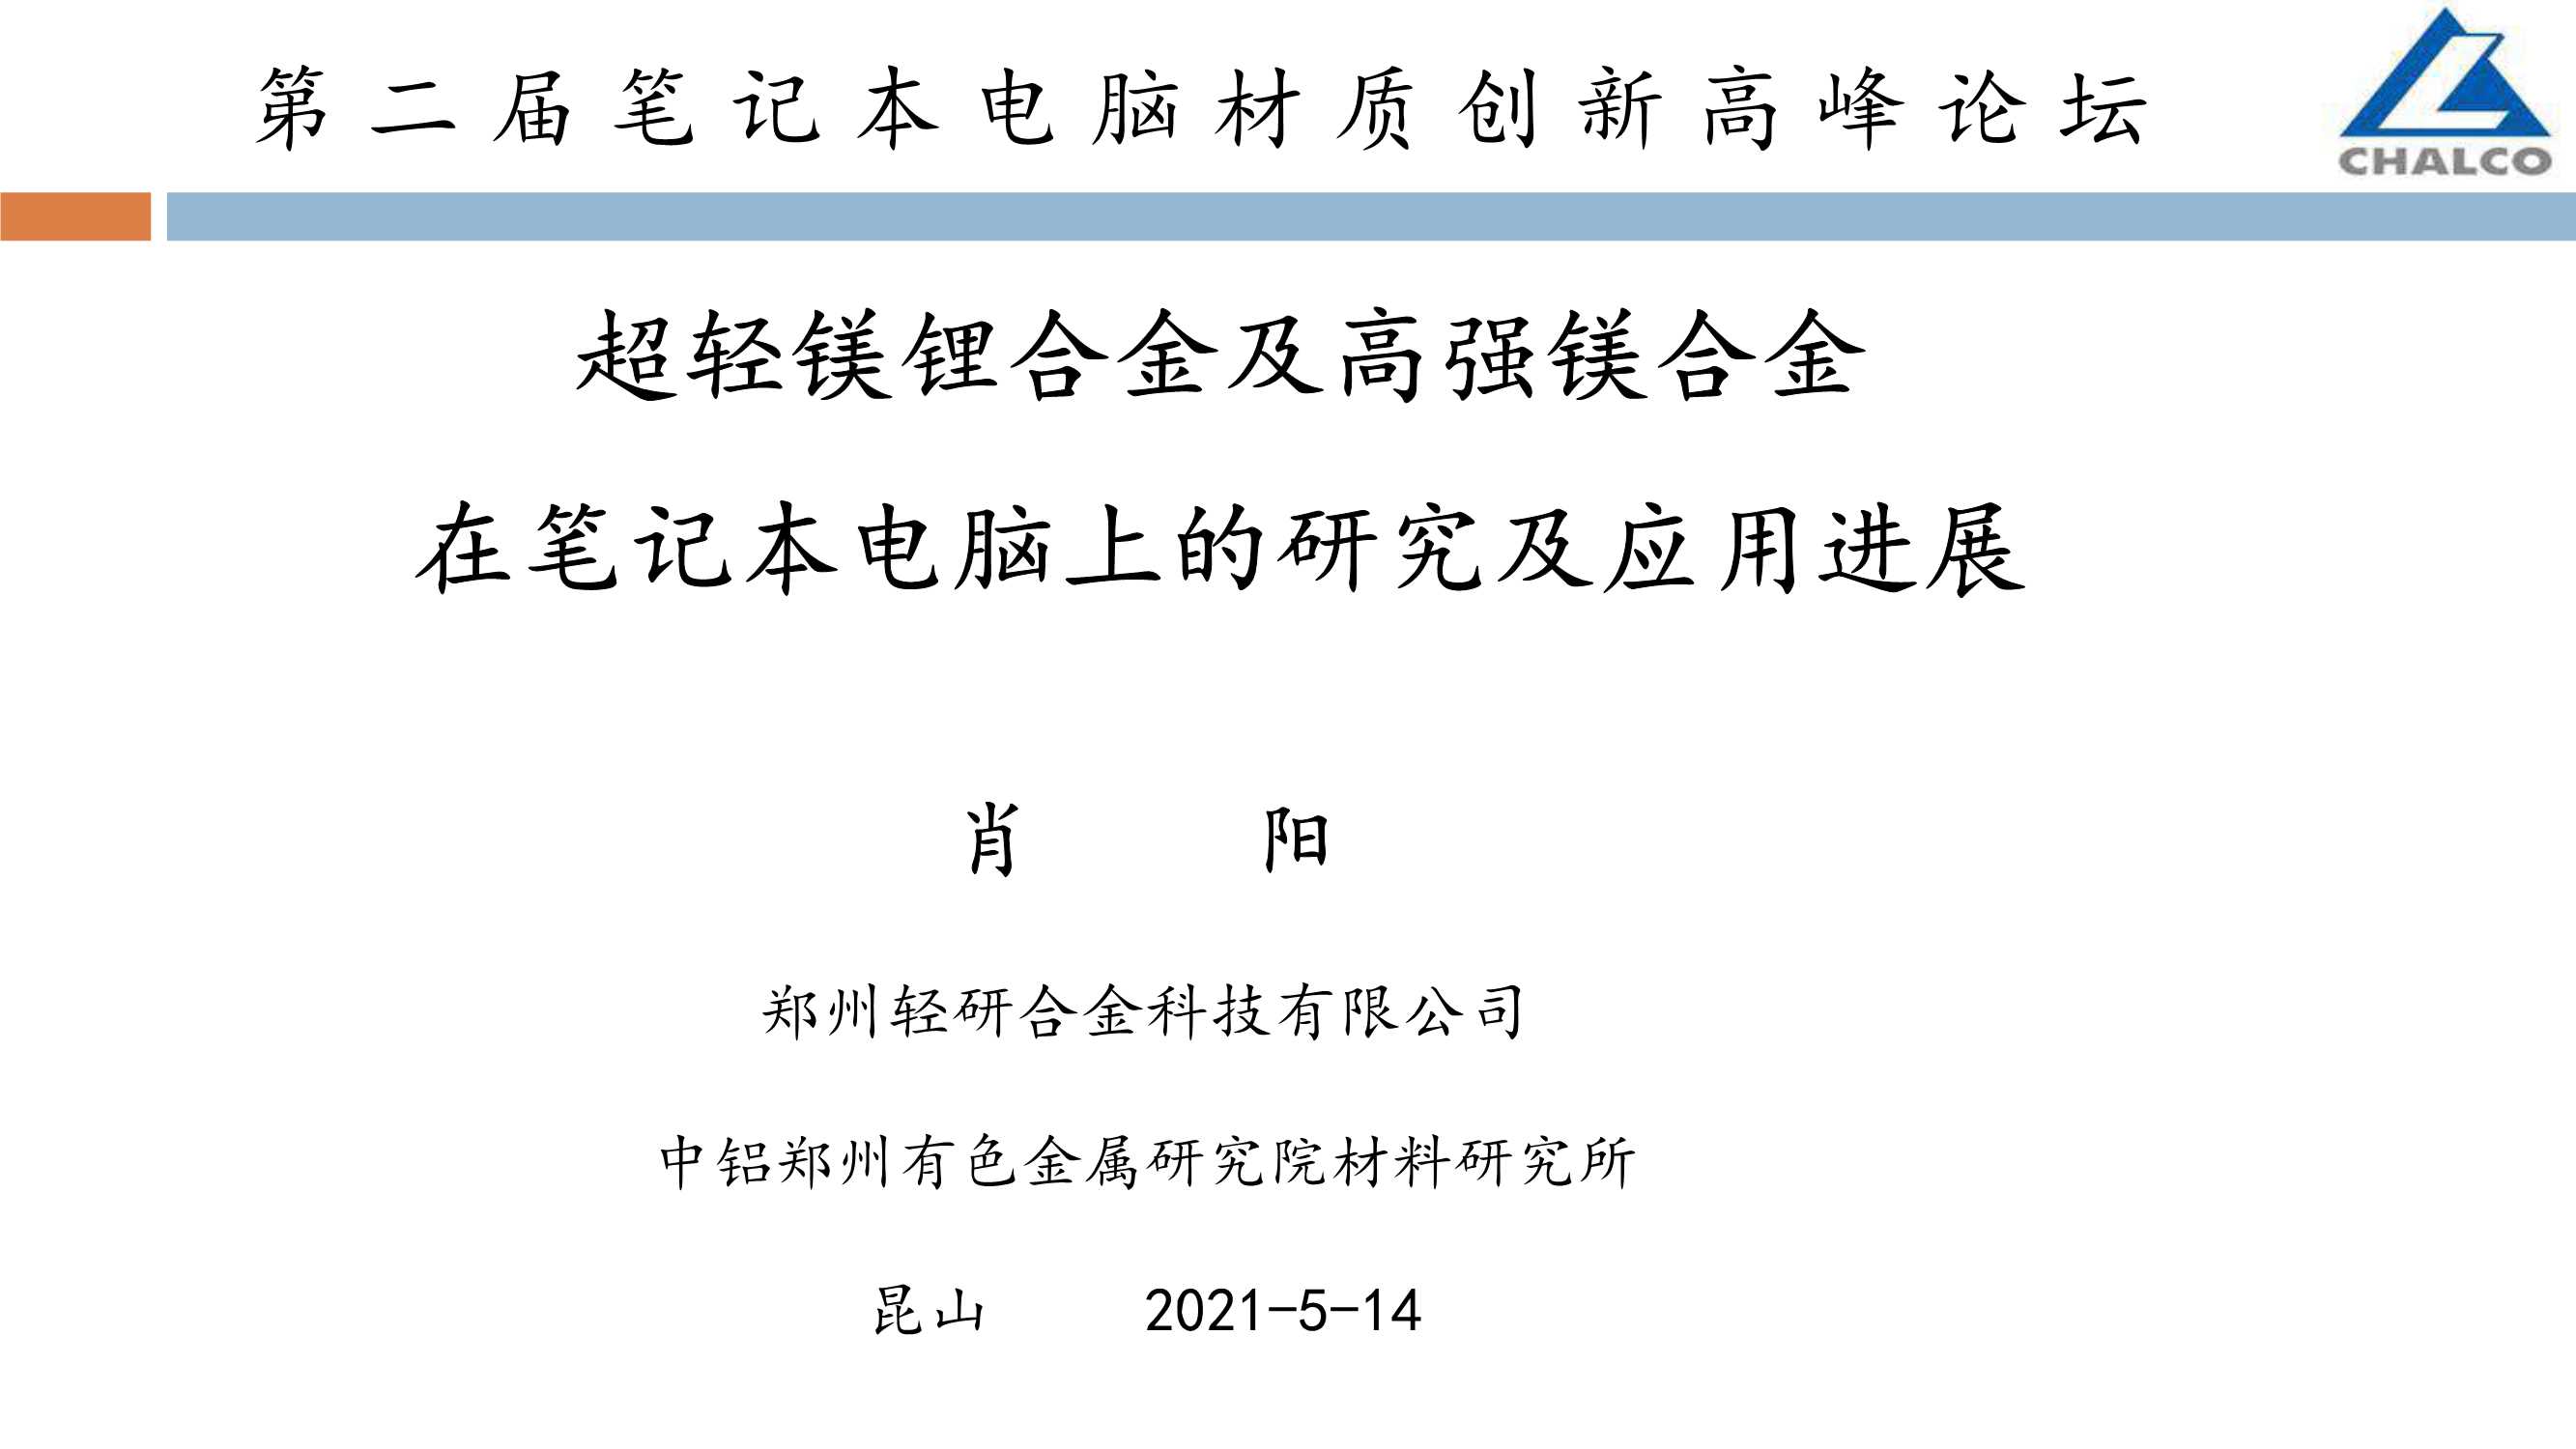 中国铝业-超轻镁锂合金及高强镁合金在笔记本电脑上的研究及应用进展-38页